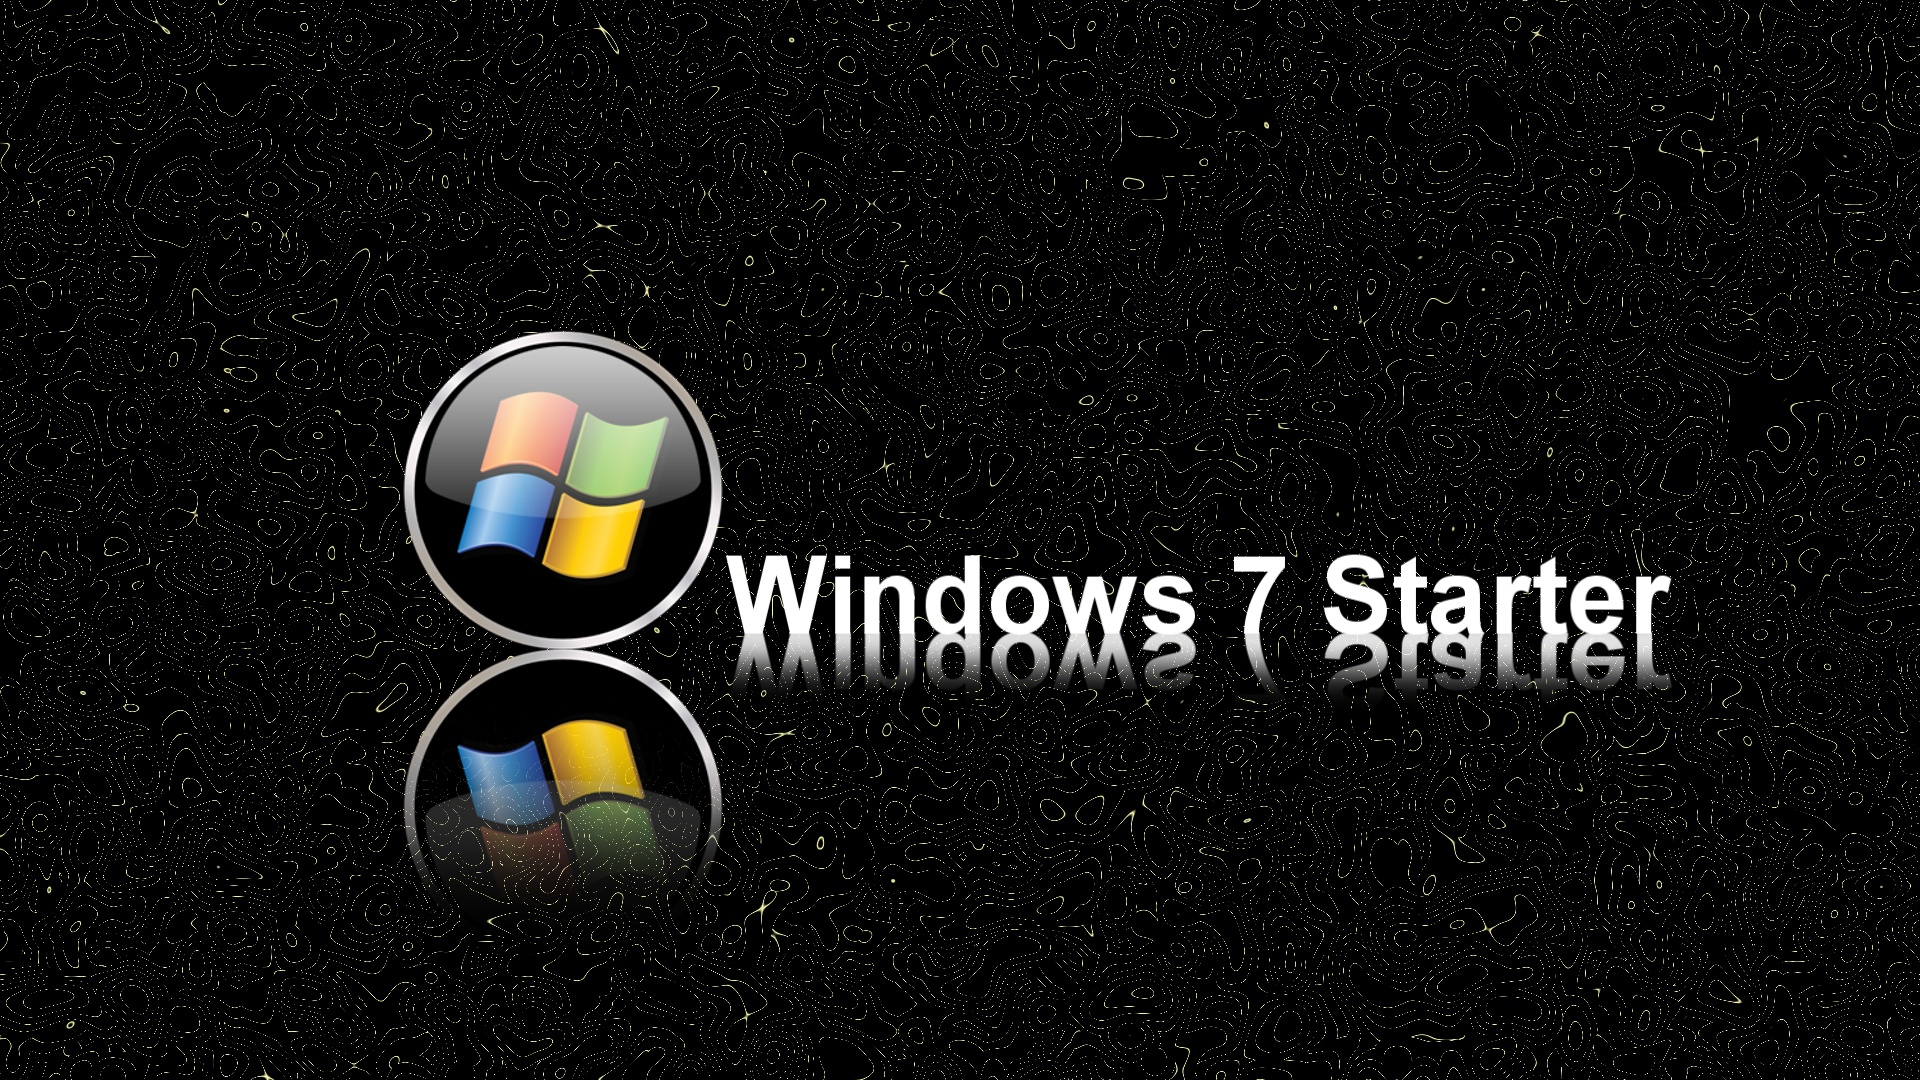 Windows 7 Starter Wallpaper By Windytheplaneh On Deviantart